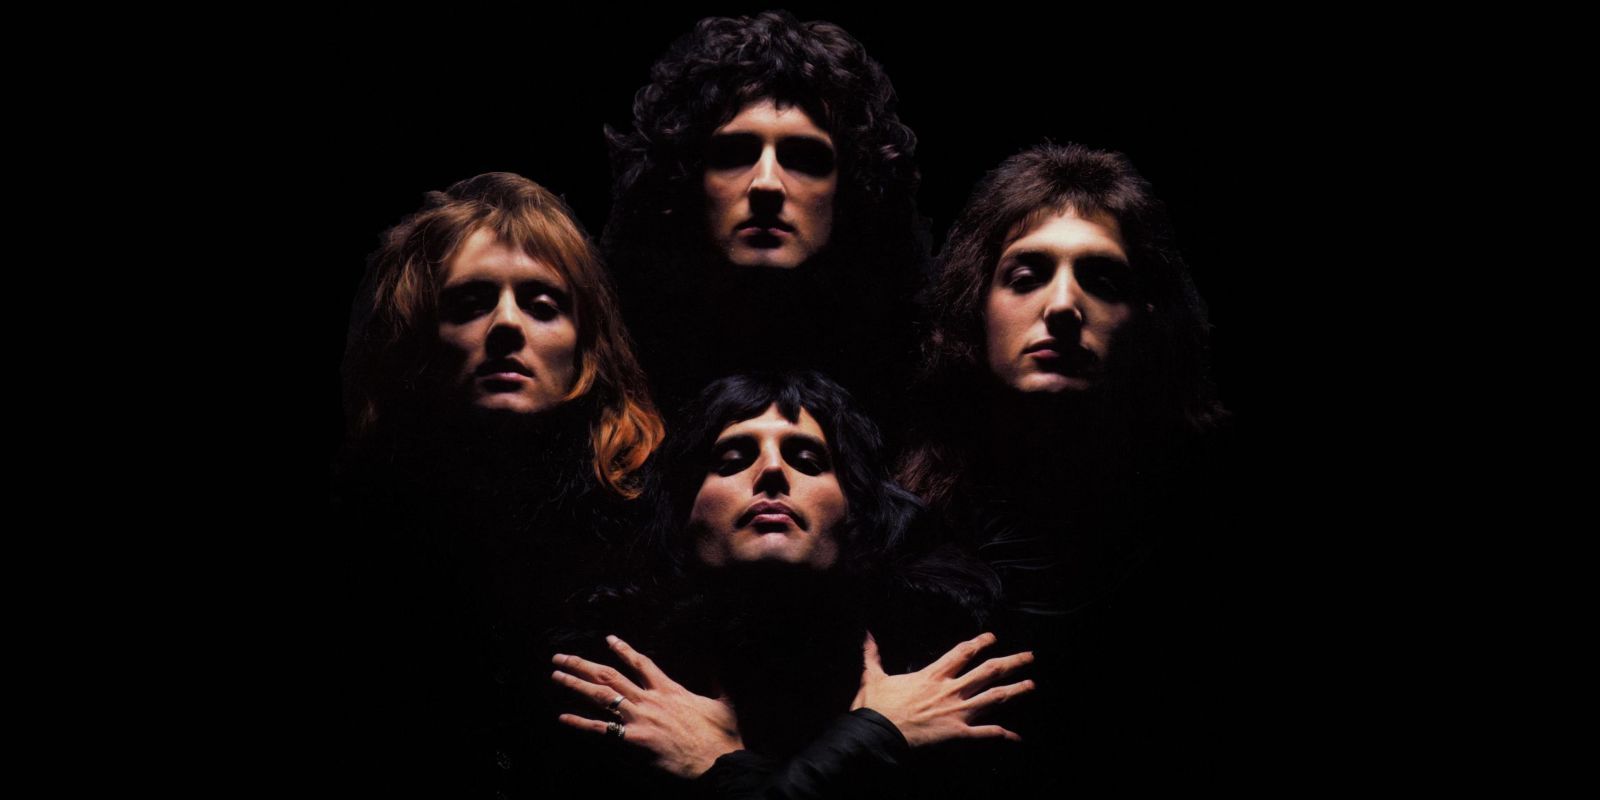 Queen in the Bohemian Rhapsody music video